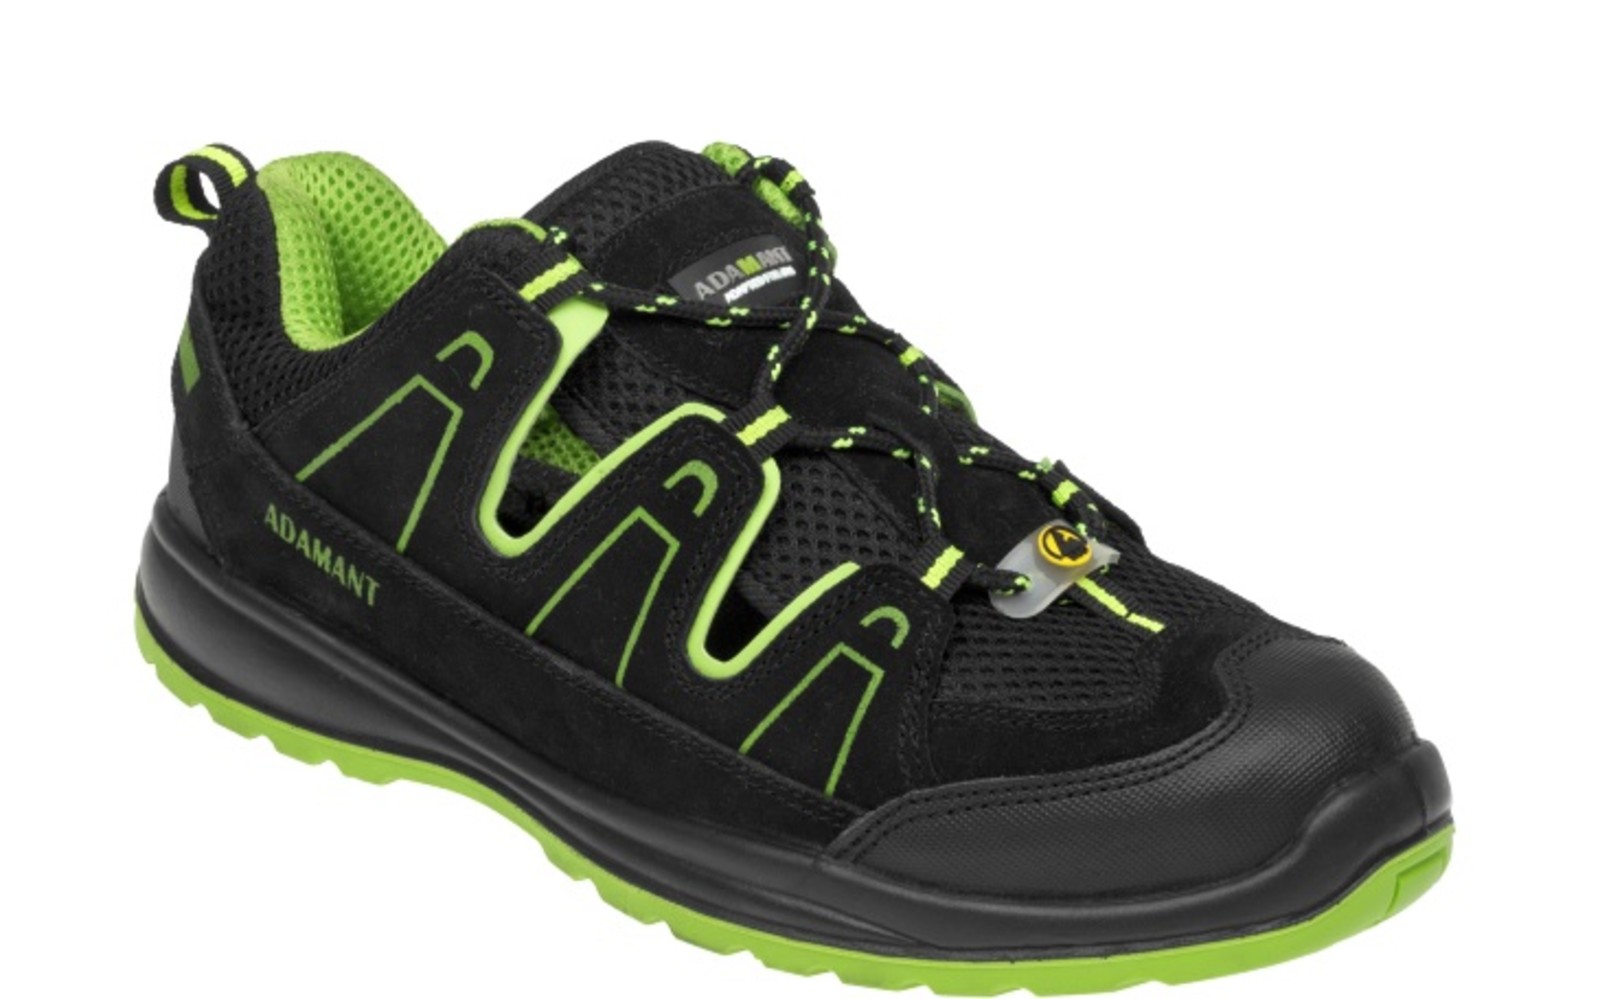 Bezpečnostné sandále Adamant Alegro S1 ESD - veľkosť: 43, farba: čierna/zelená